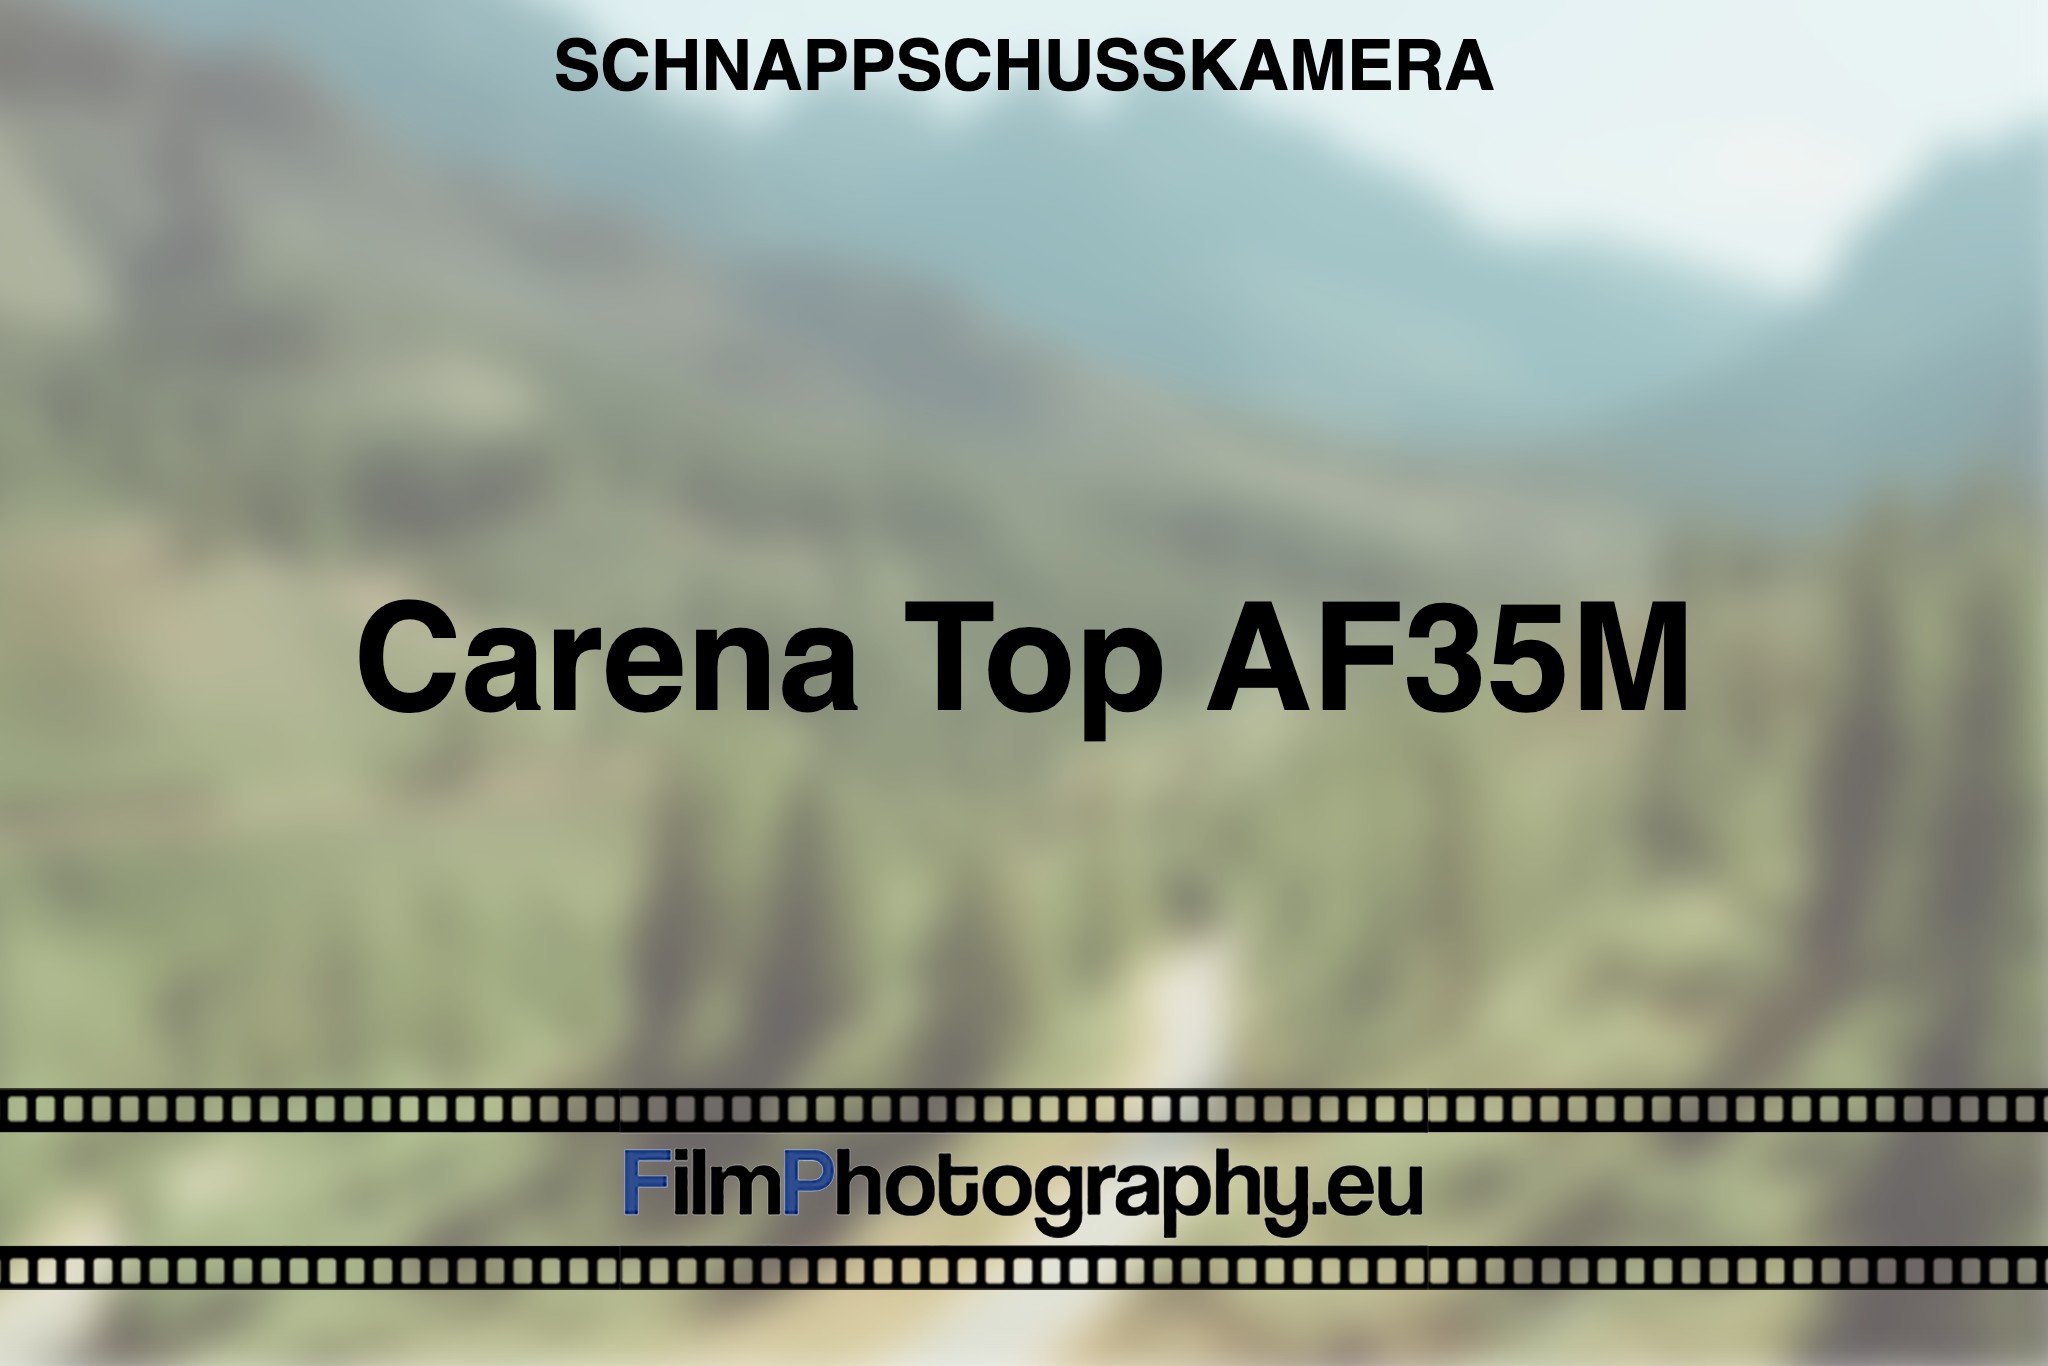 carena-top-af35m-schnappschusskamera-bnv